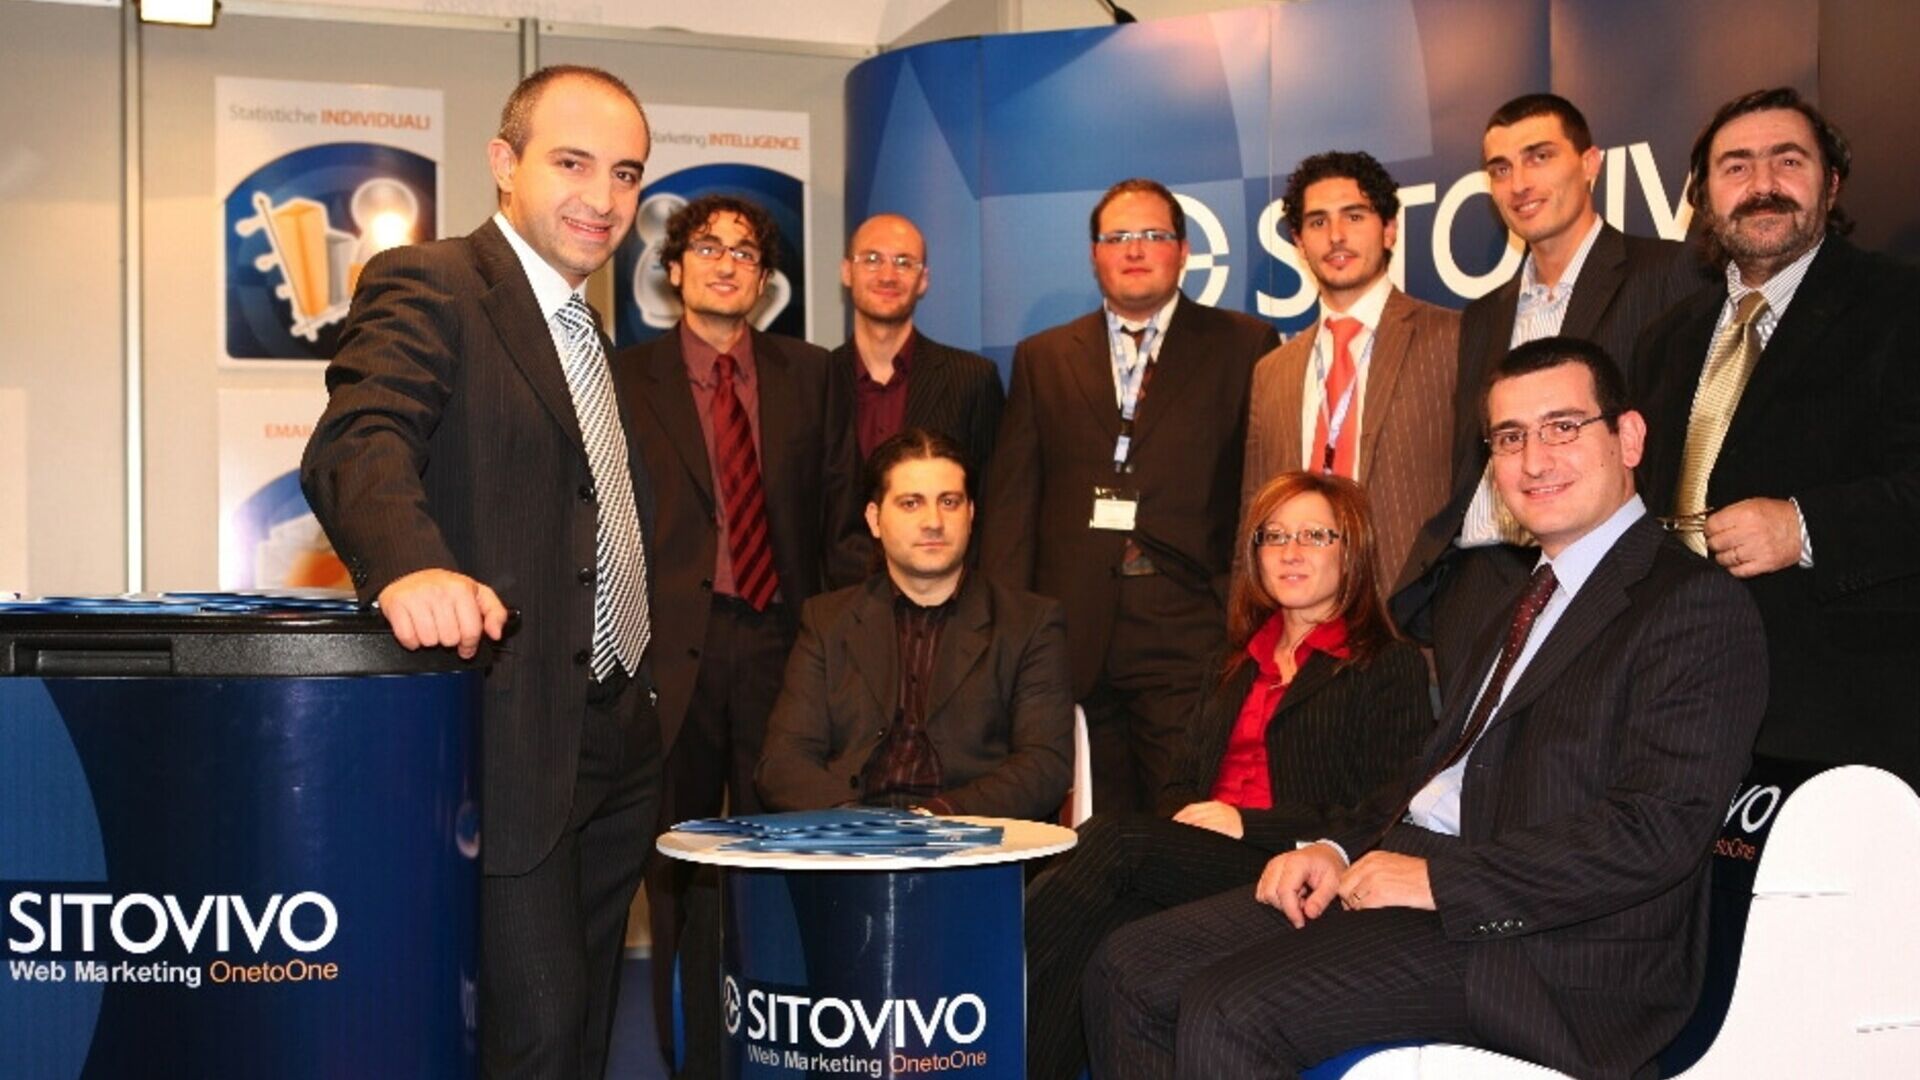 Співробітники компанії SitoVivo м. Турин і Джарре (Катанія)